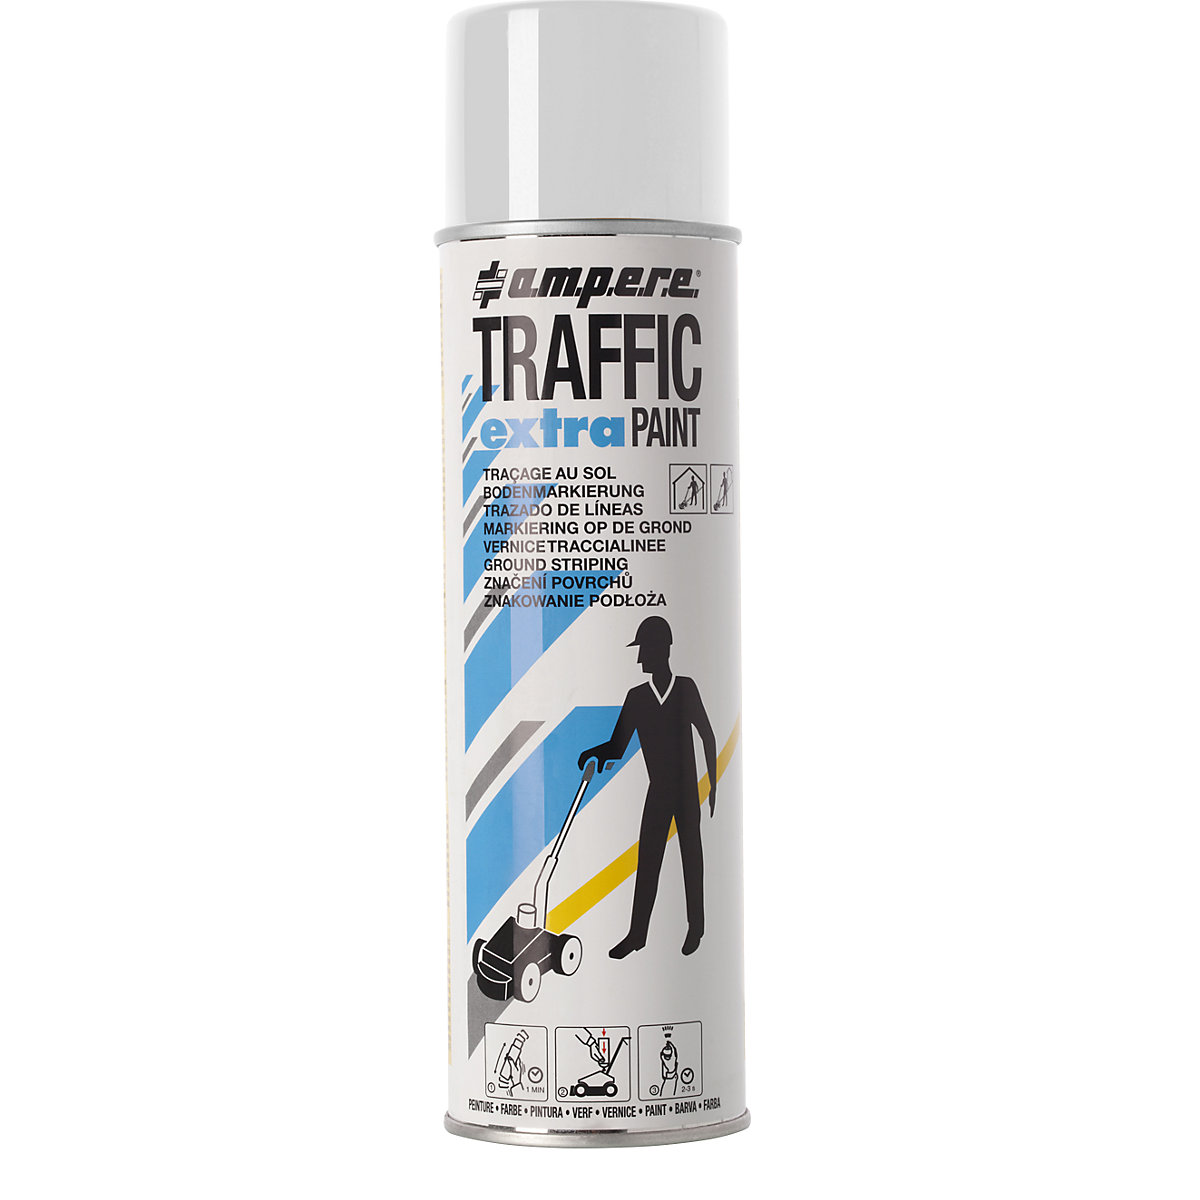 Značkovací barva Traffic extra Paint® pro silné namáhání – Ampere